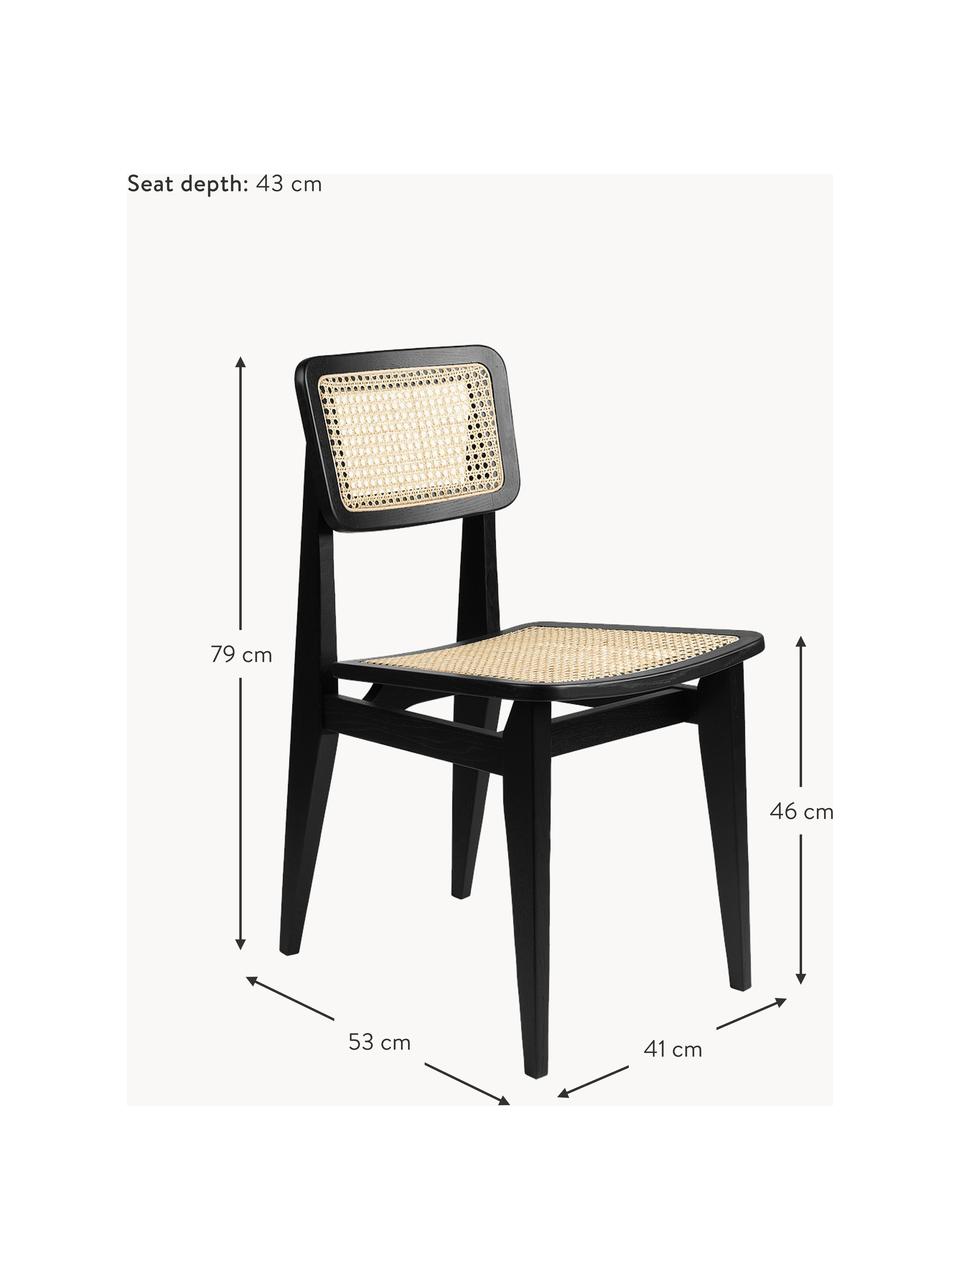 Krzesło z drewna dębowego z plecionką wiedeńską C-Chair, Stelaż: drewno dębowe, lakierowan, Drewno dębowe czarny lakierowany, jasny beżowy, S 41 x G 53 cm